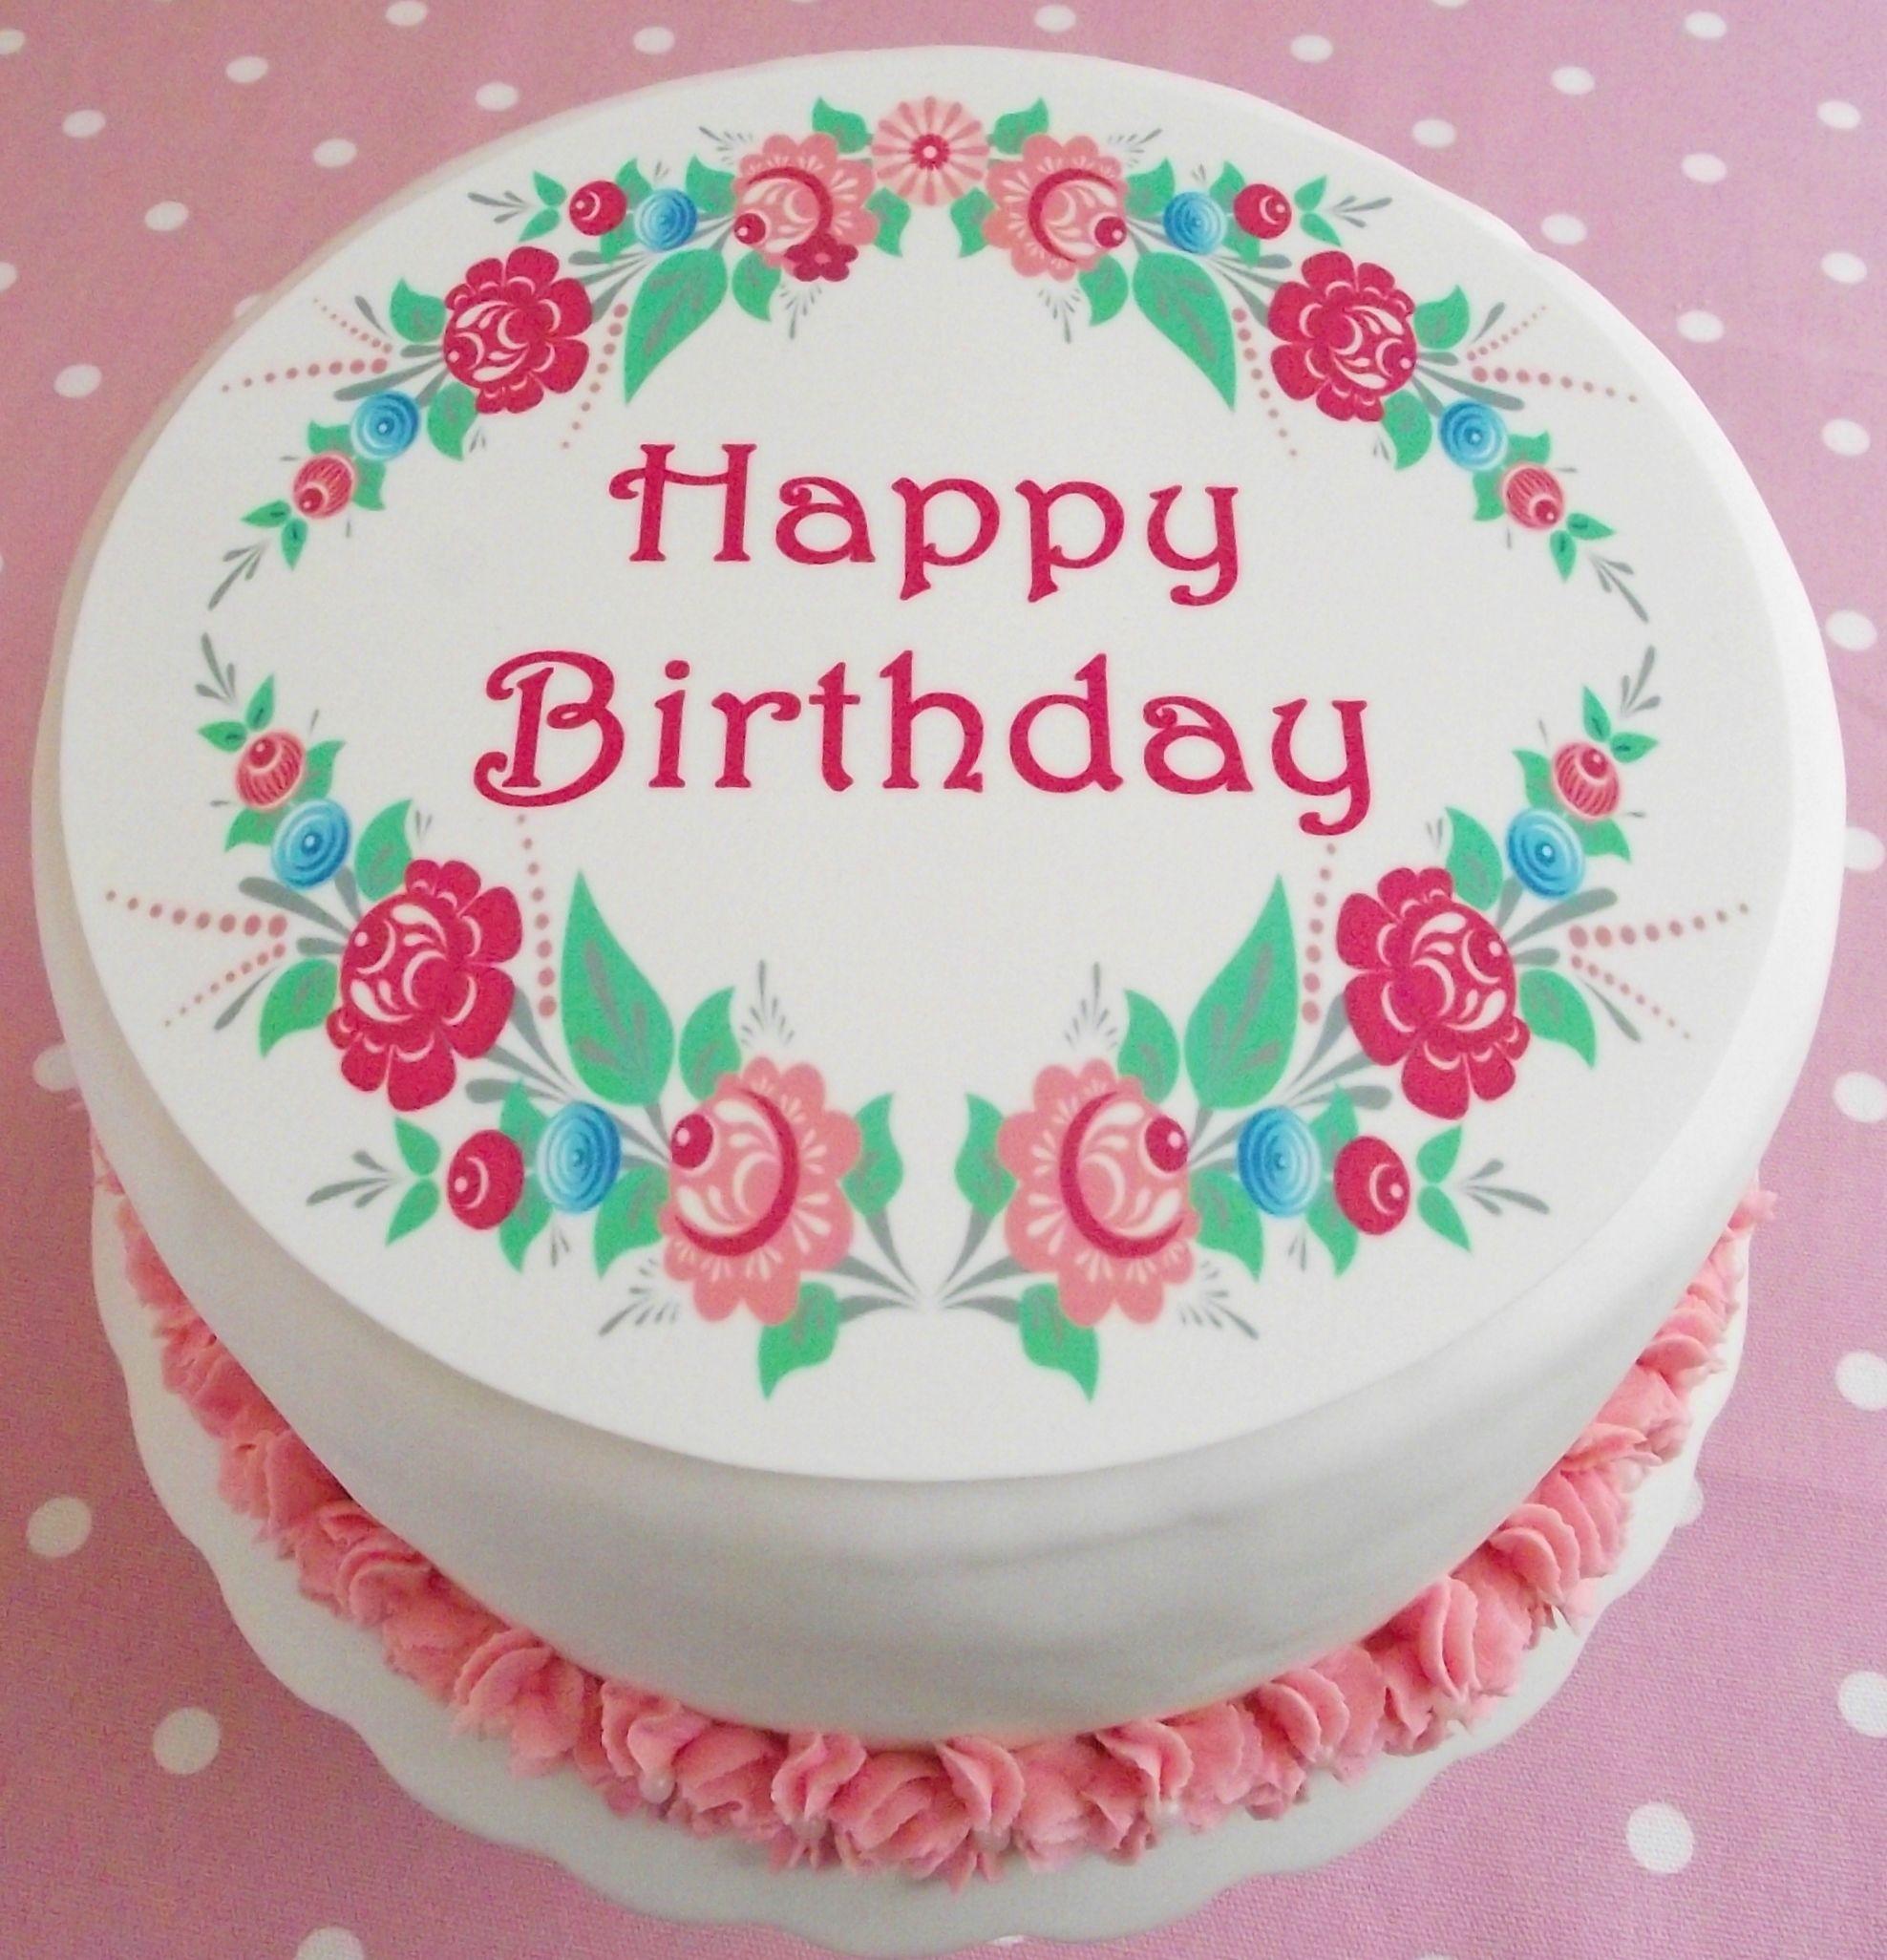 Happy Birthday Cakes Picture